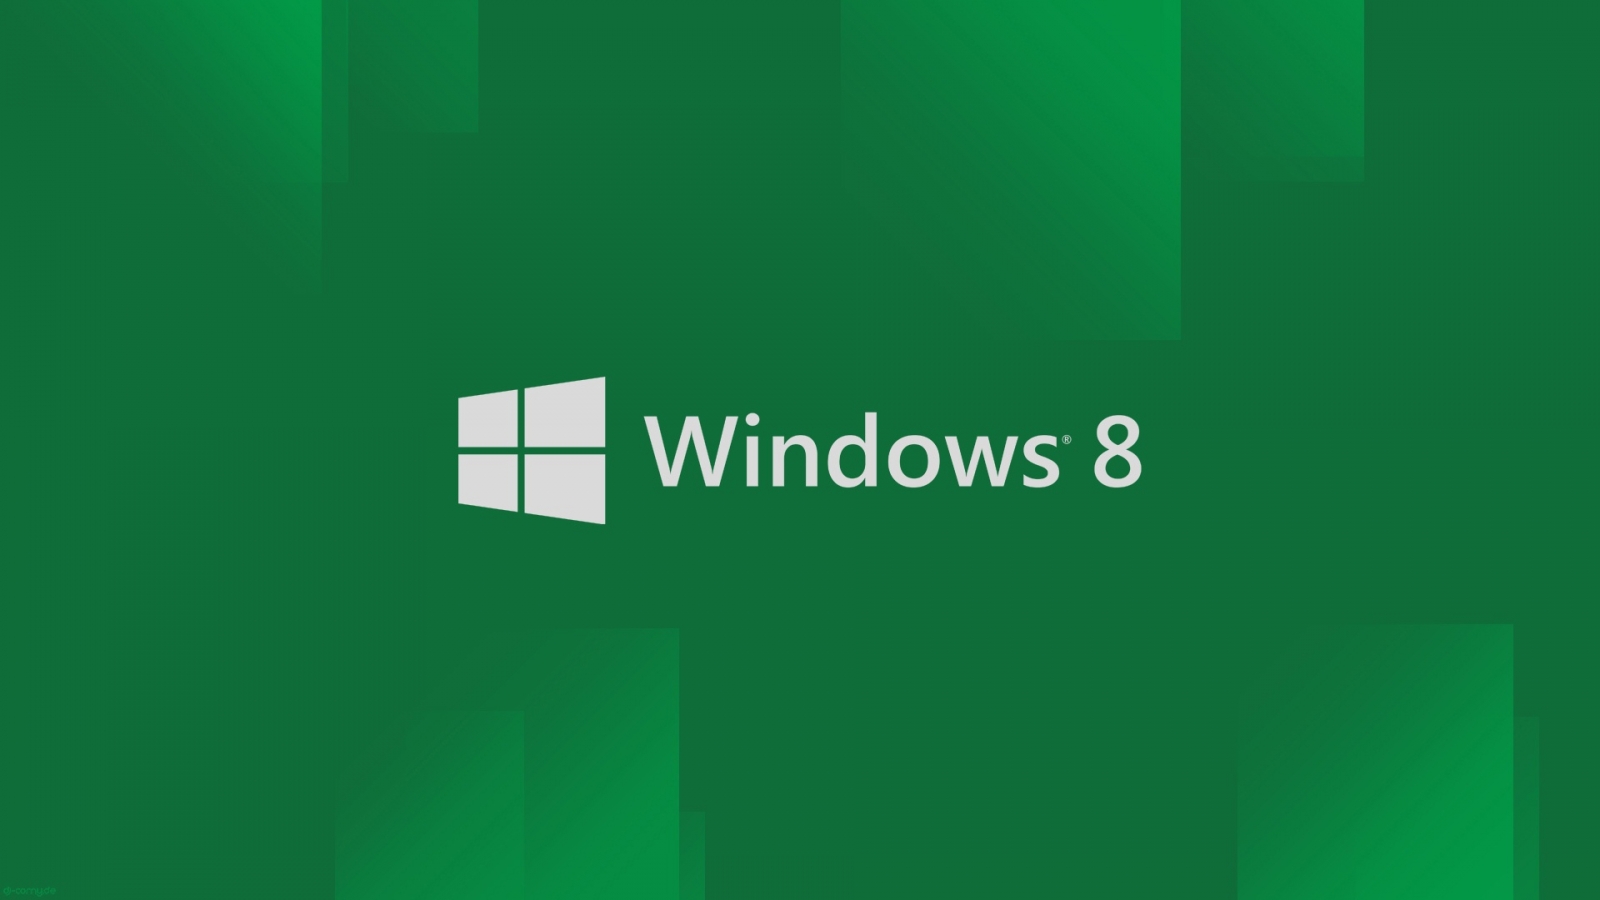 Tải miễn phí hình nền máy tính Windows 8 để tạo cho mình một không gian làm việc đầy ấn tượng và chuyên nghiệp. Với đa dạng các chủ đề và chất lượng hình ảnh cao, bạn sẽ tìm được điều mình ưa thích.